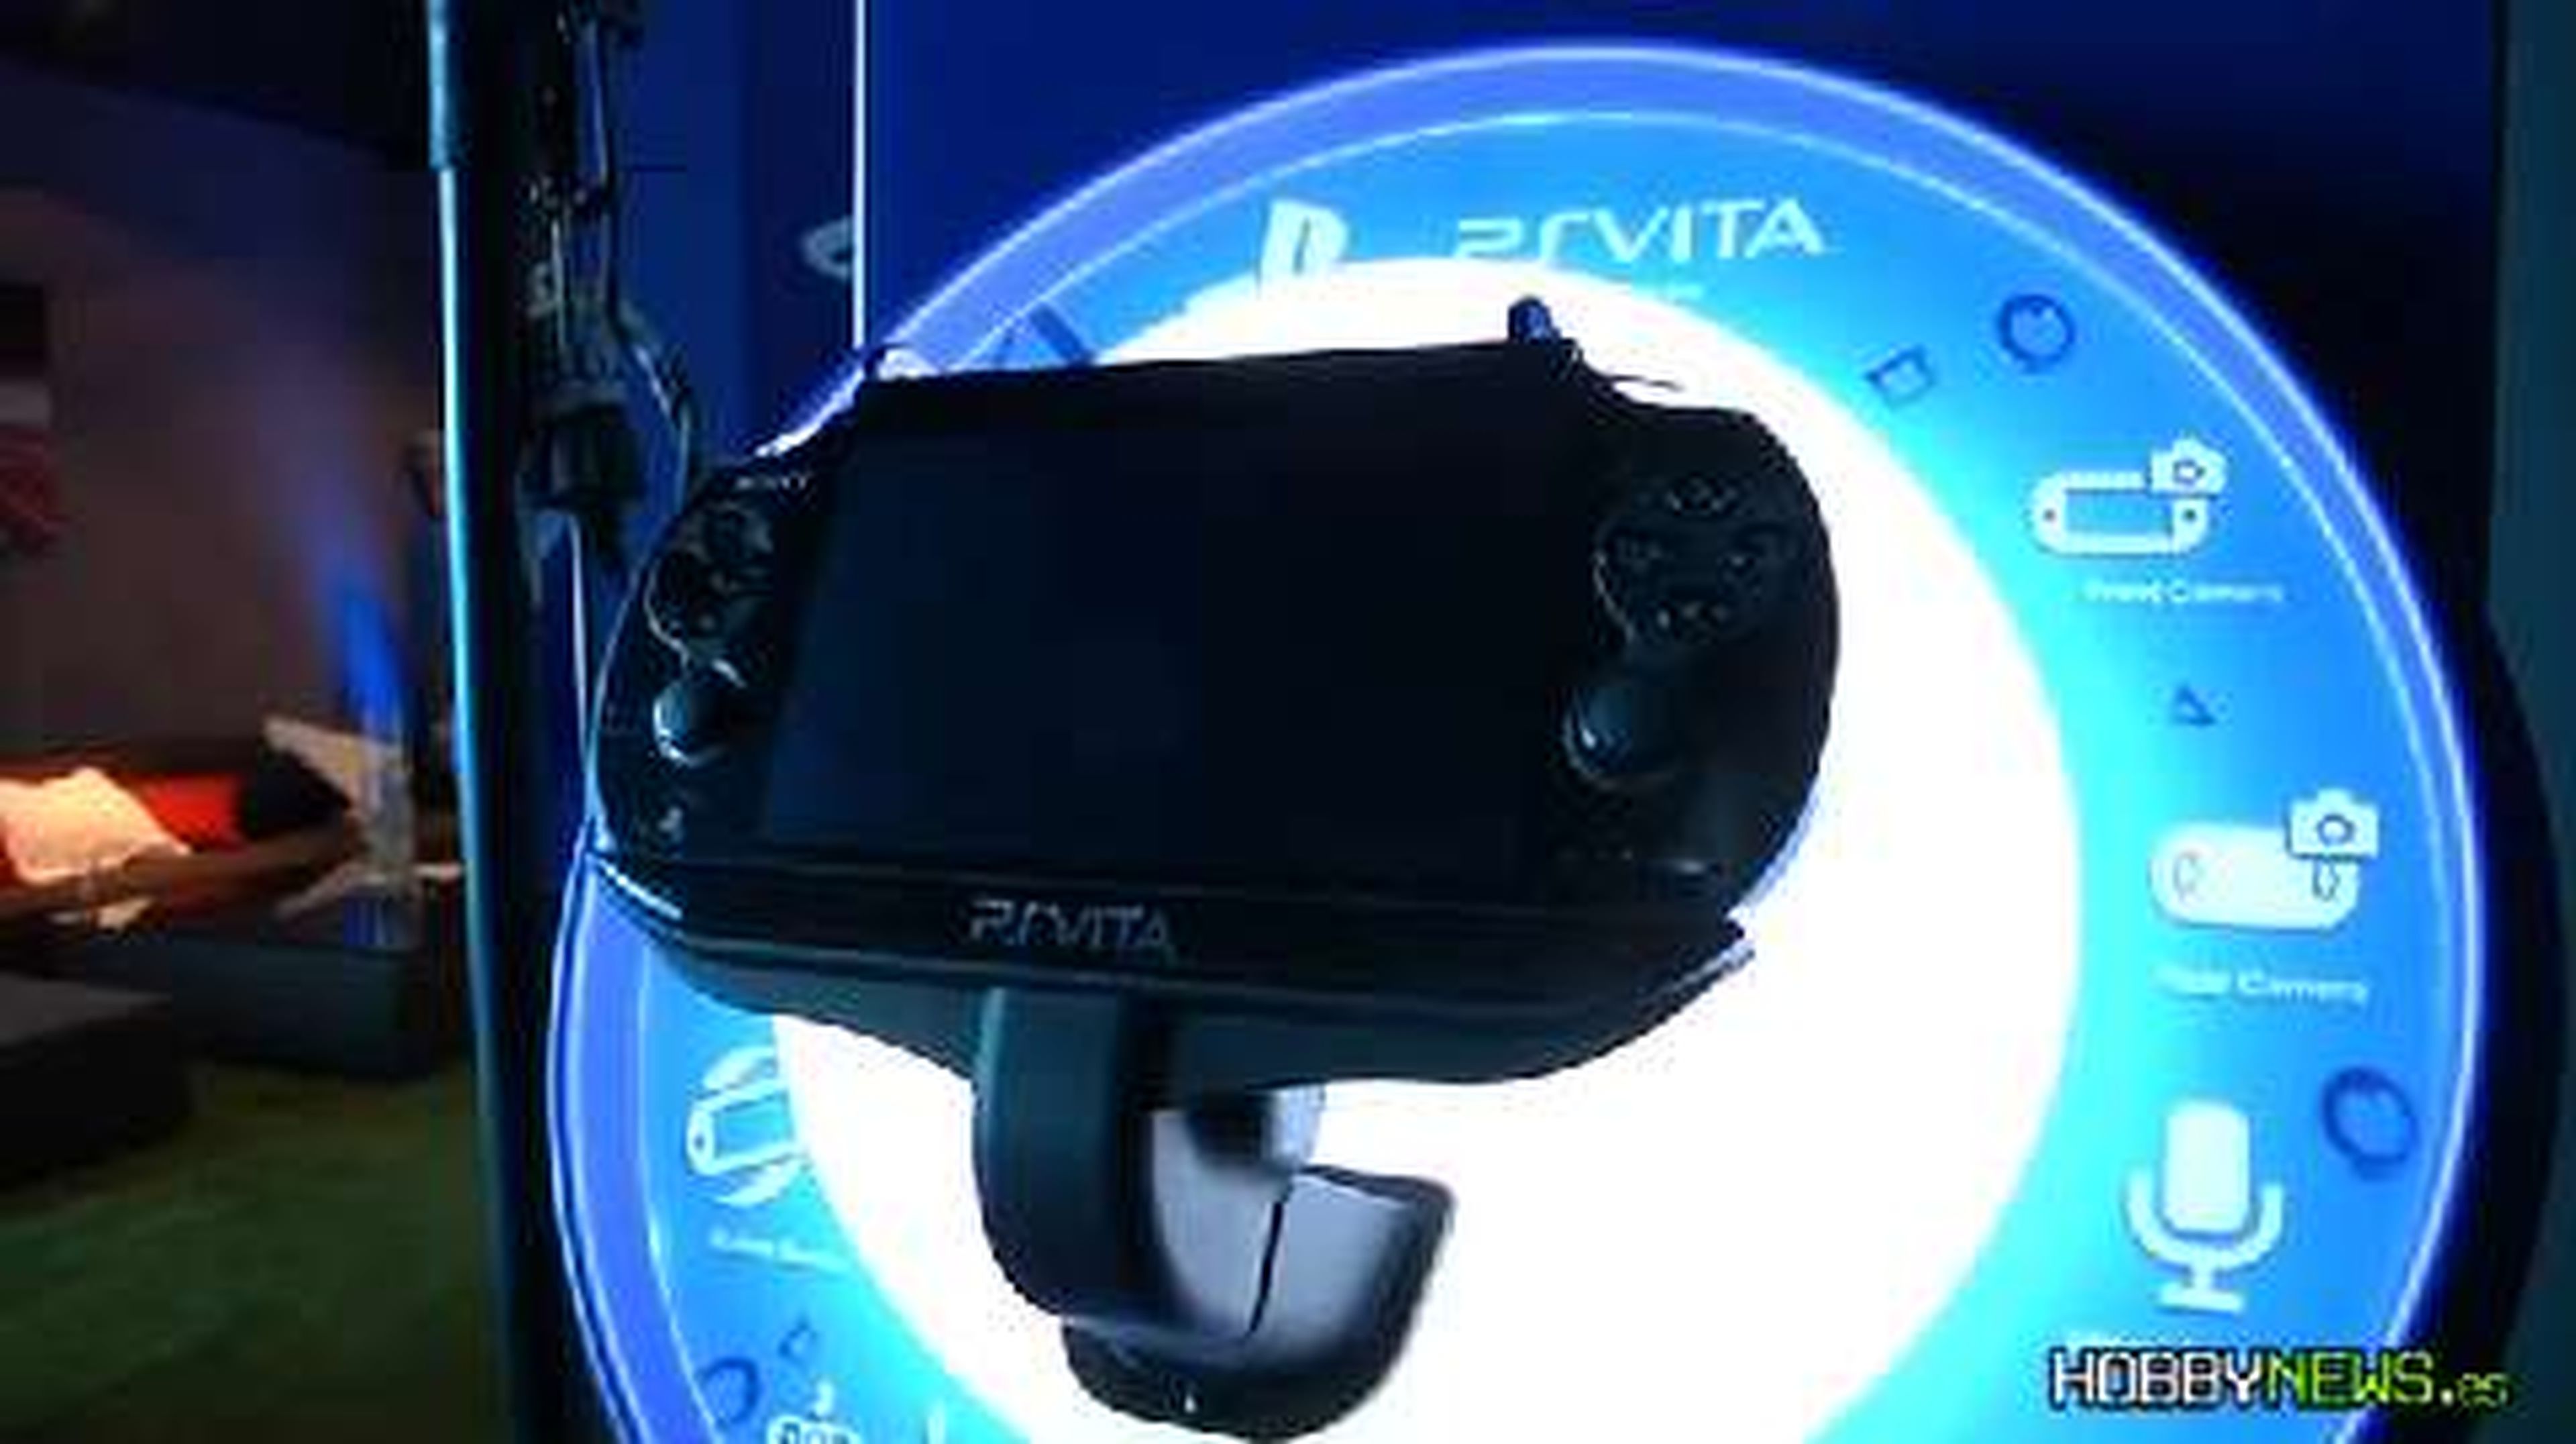 PS Vita (HD) fiesta presentación en HobbyNews.es